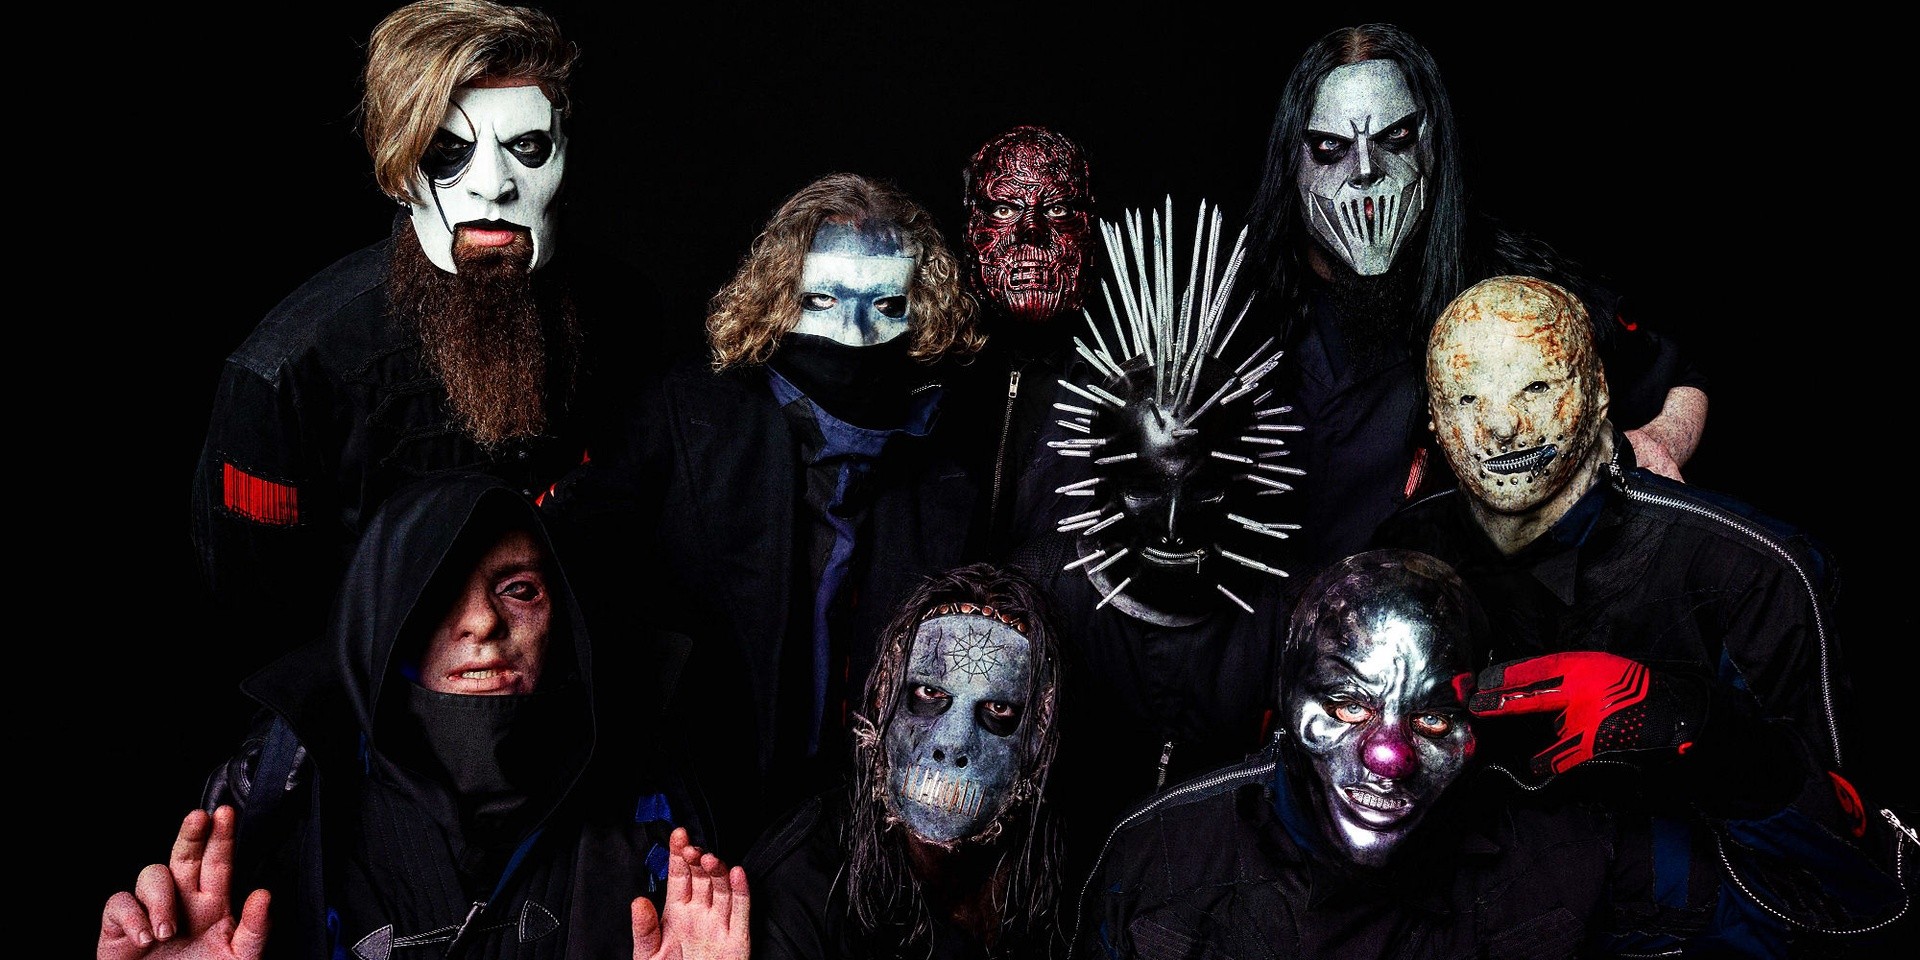 Slipknot to perform in Manila in 2020